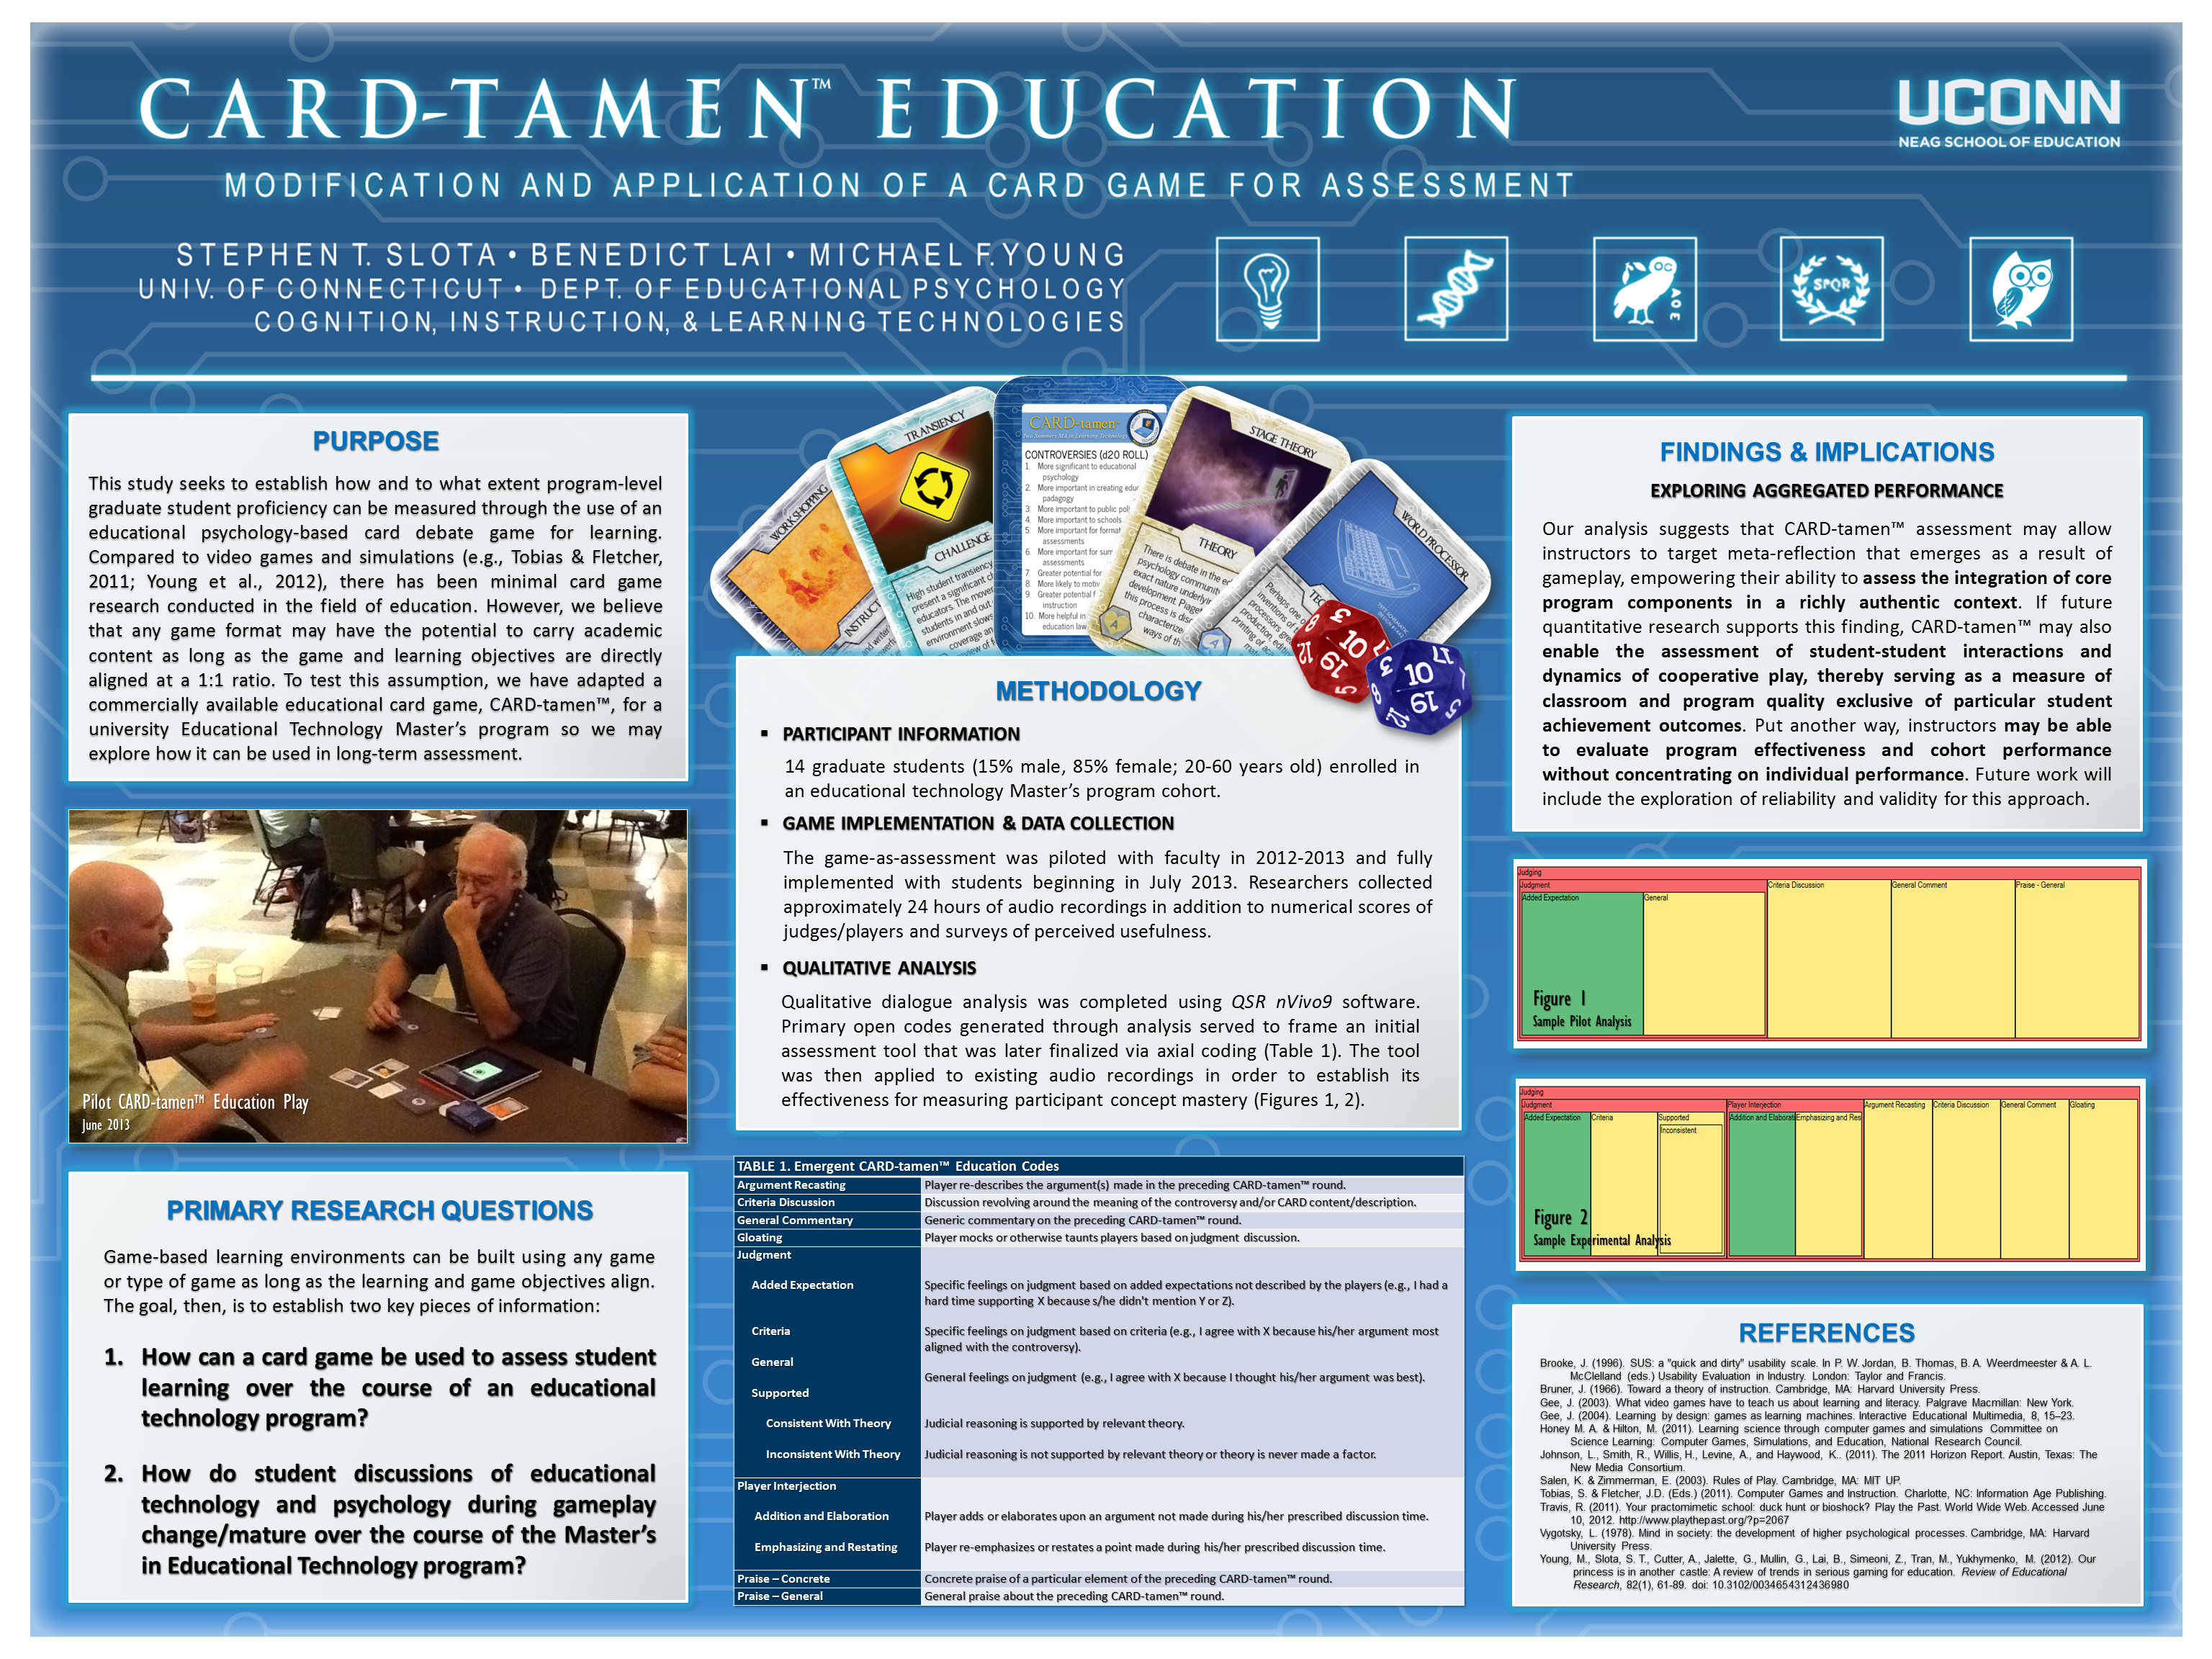 CARD-tamen Education Academic Poster